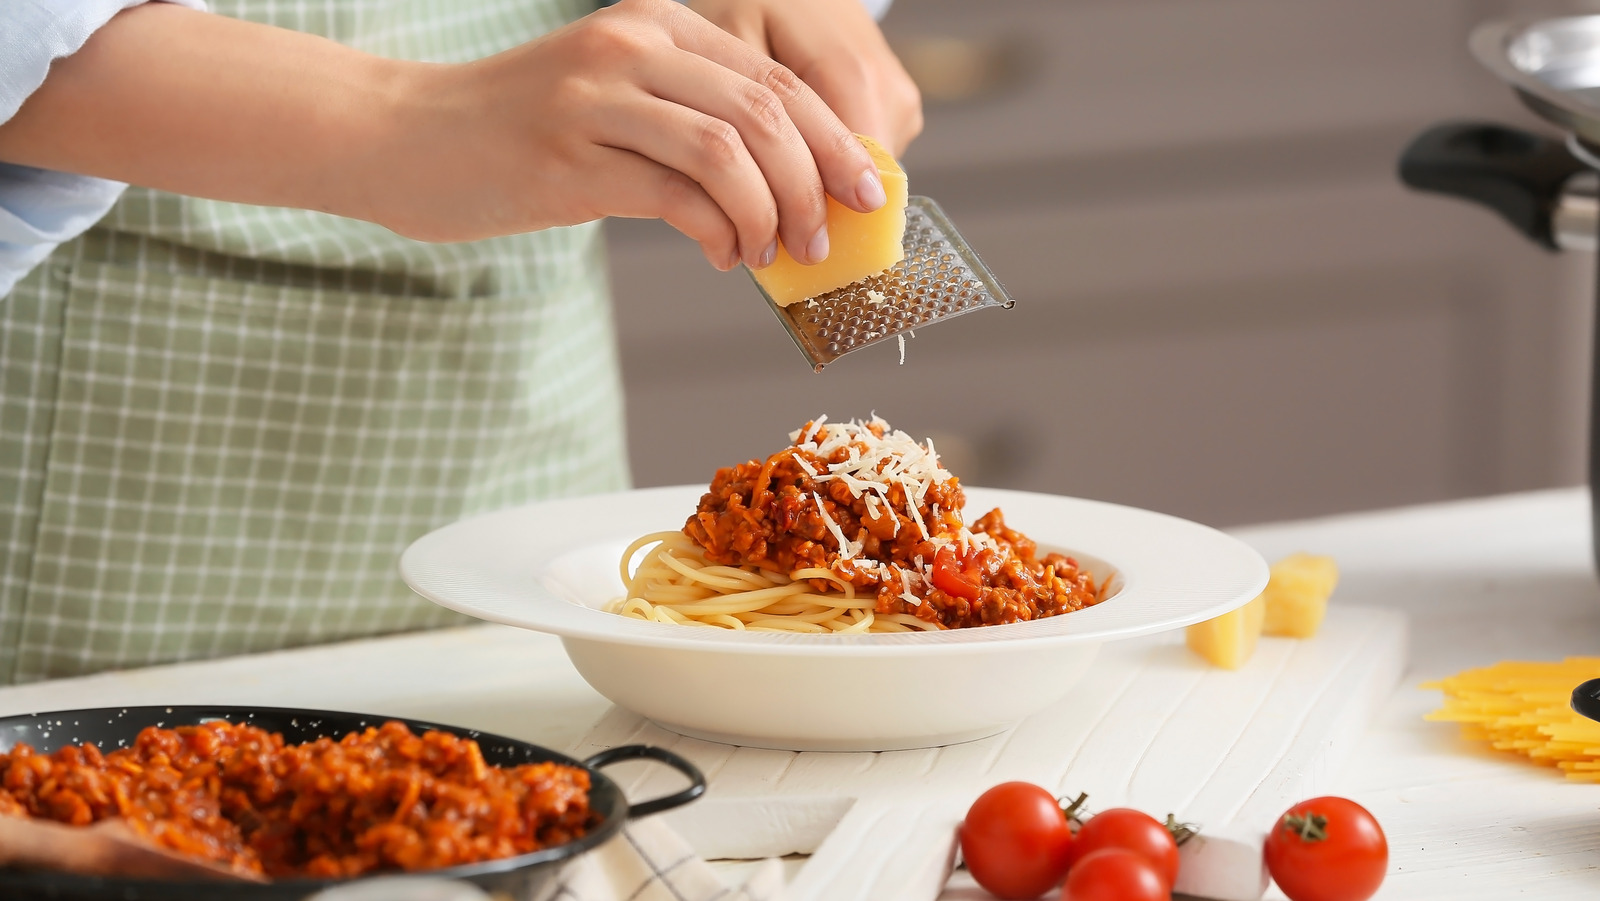 Taste cook. Как правильно есть спагетти по этикету. С чем правильно есть макароны. Как есть спагетти по этикету. Шеф трёт сыр на пасту.